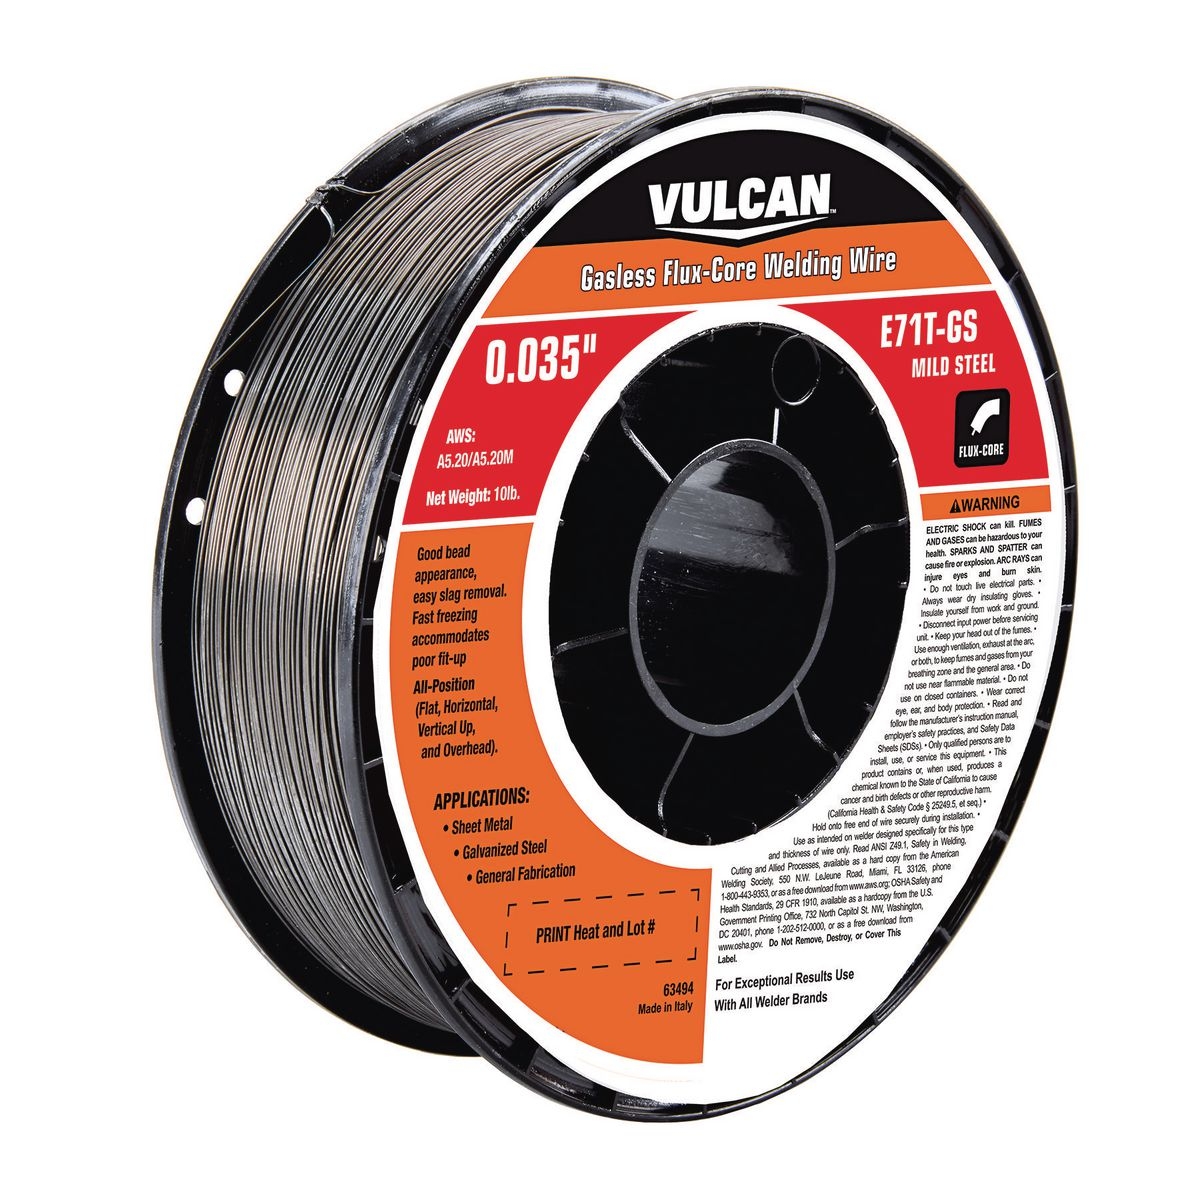 VULCAN 0.035 in. E71T-GS Flux Core Welding Wire 10.00 lb. Roll - Item 63494